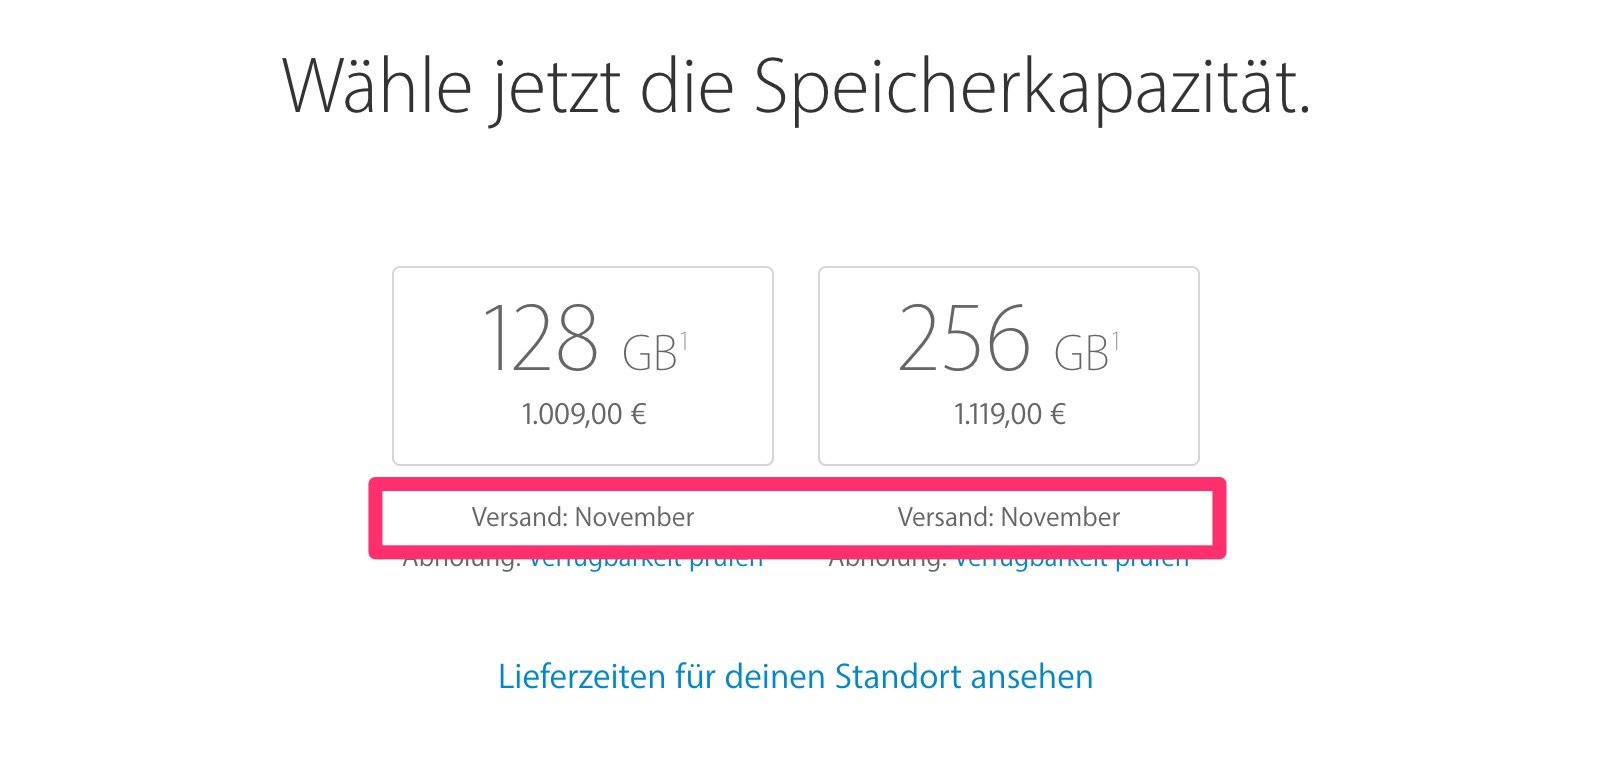 iPhone 7 (Plus) schon ausverkauft: Lieferzeit / Lieferung im November! 1